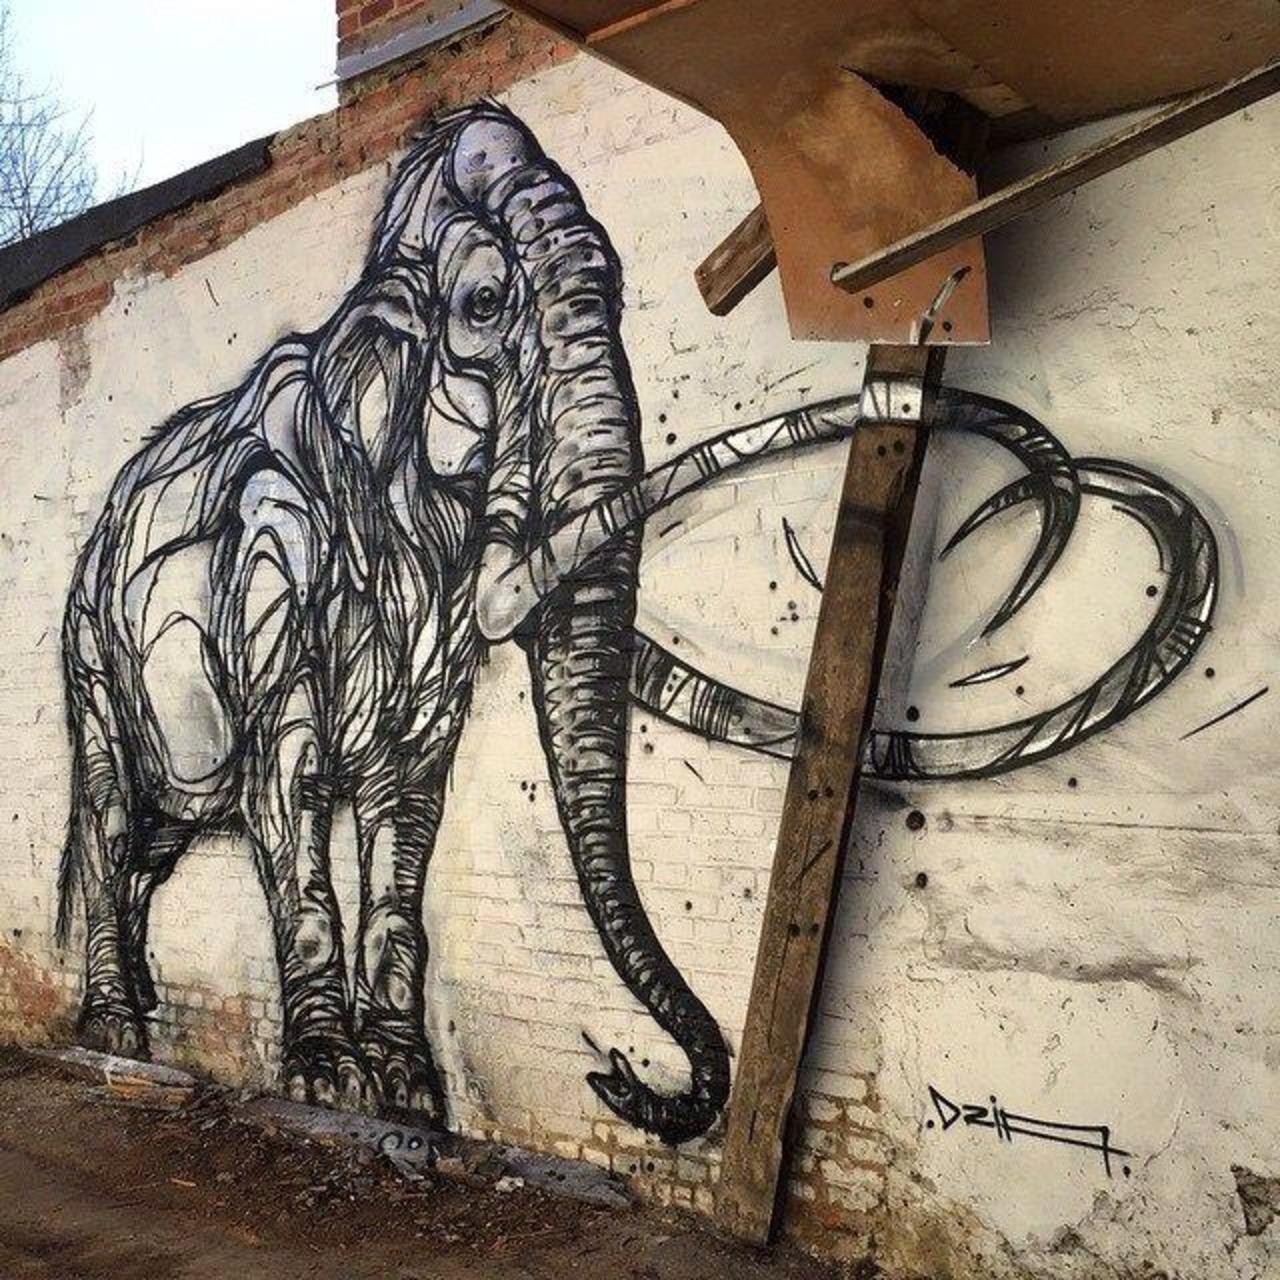 Mammoth. New nature in Street Art wall by DZIA 

#art #graffiti #mural #streetart http://t.co/jZeEEQIe3m